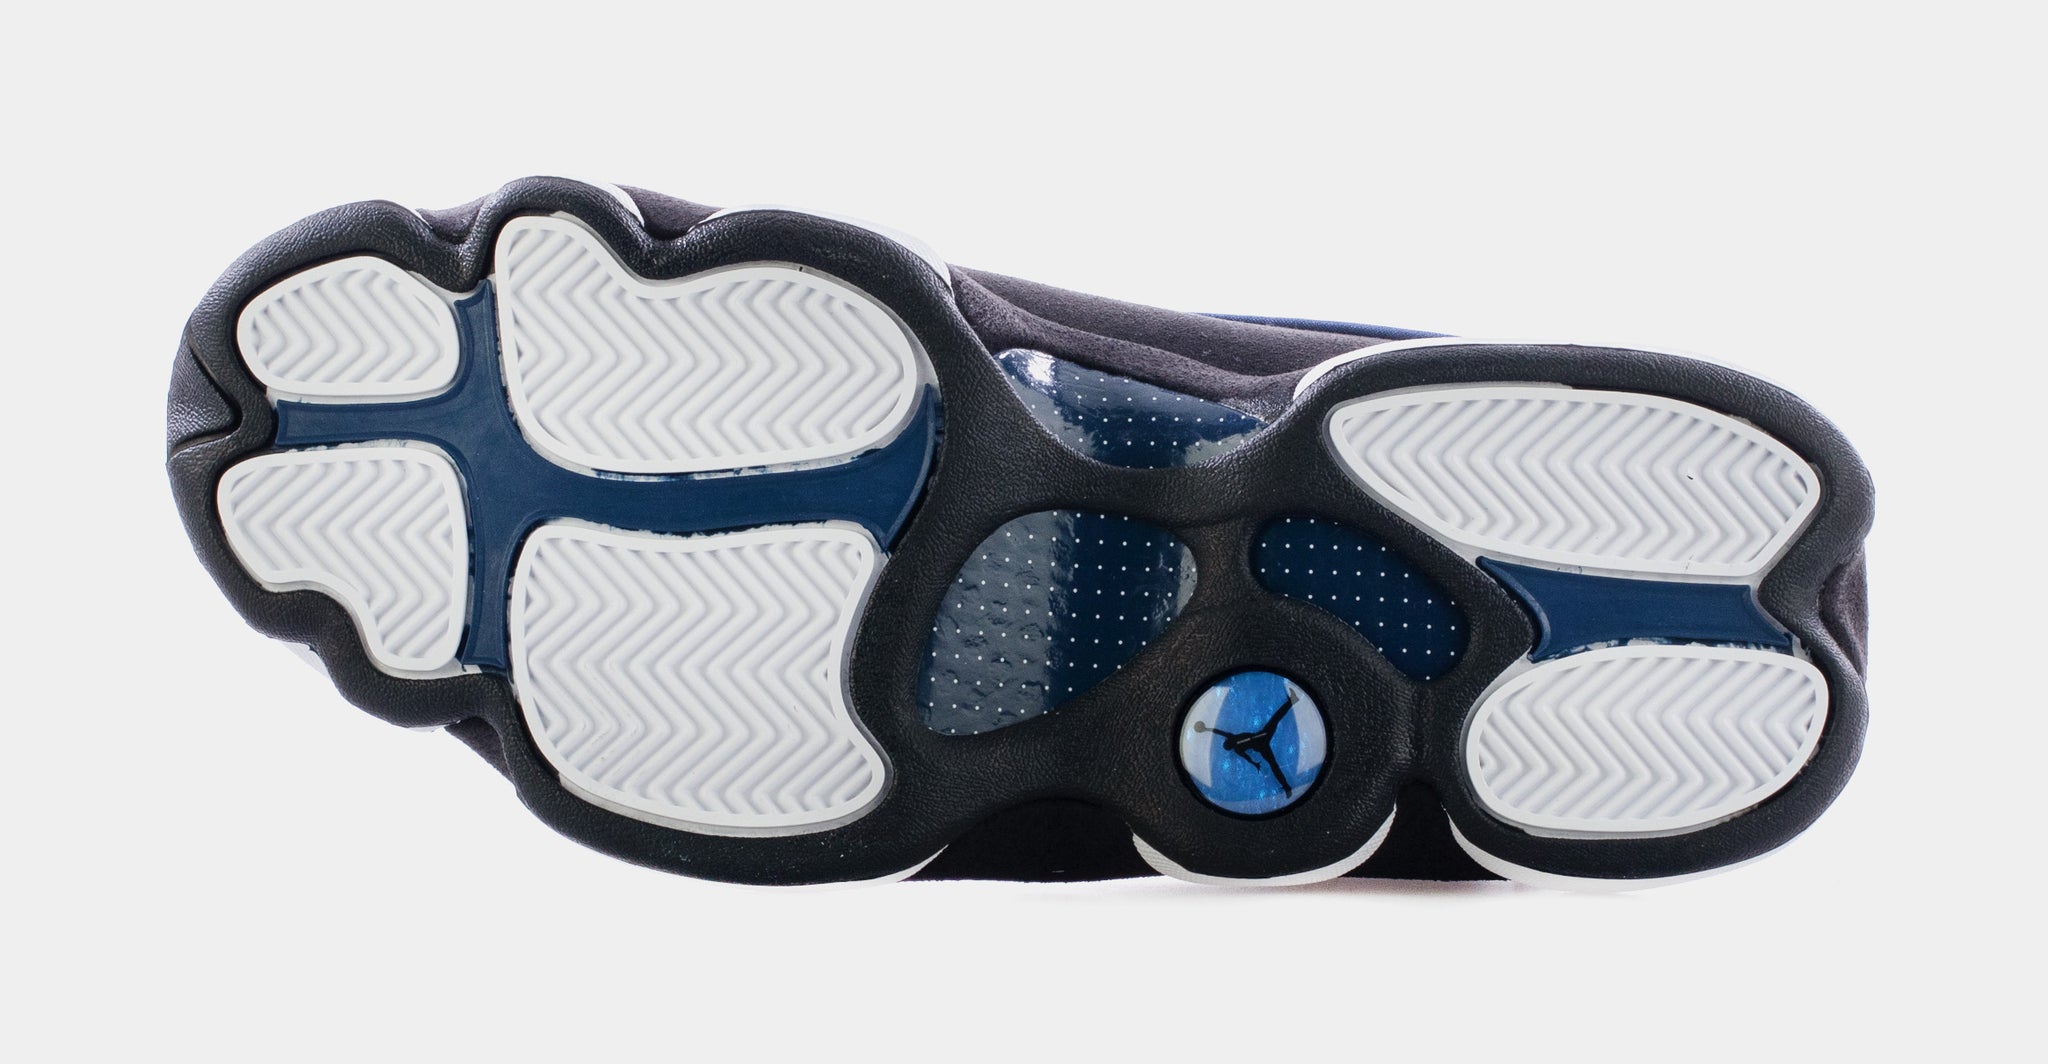 Air Jordan 13 Retro Low 'Brave Blue' Shoes - Size 10